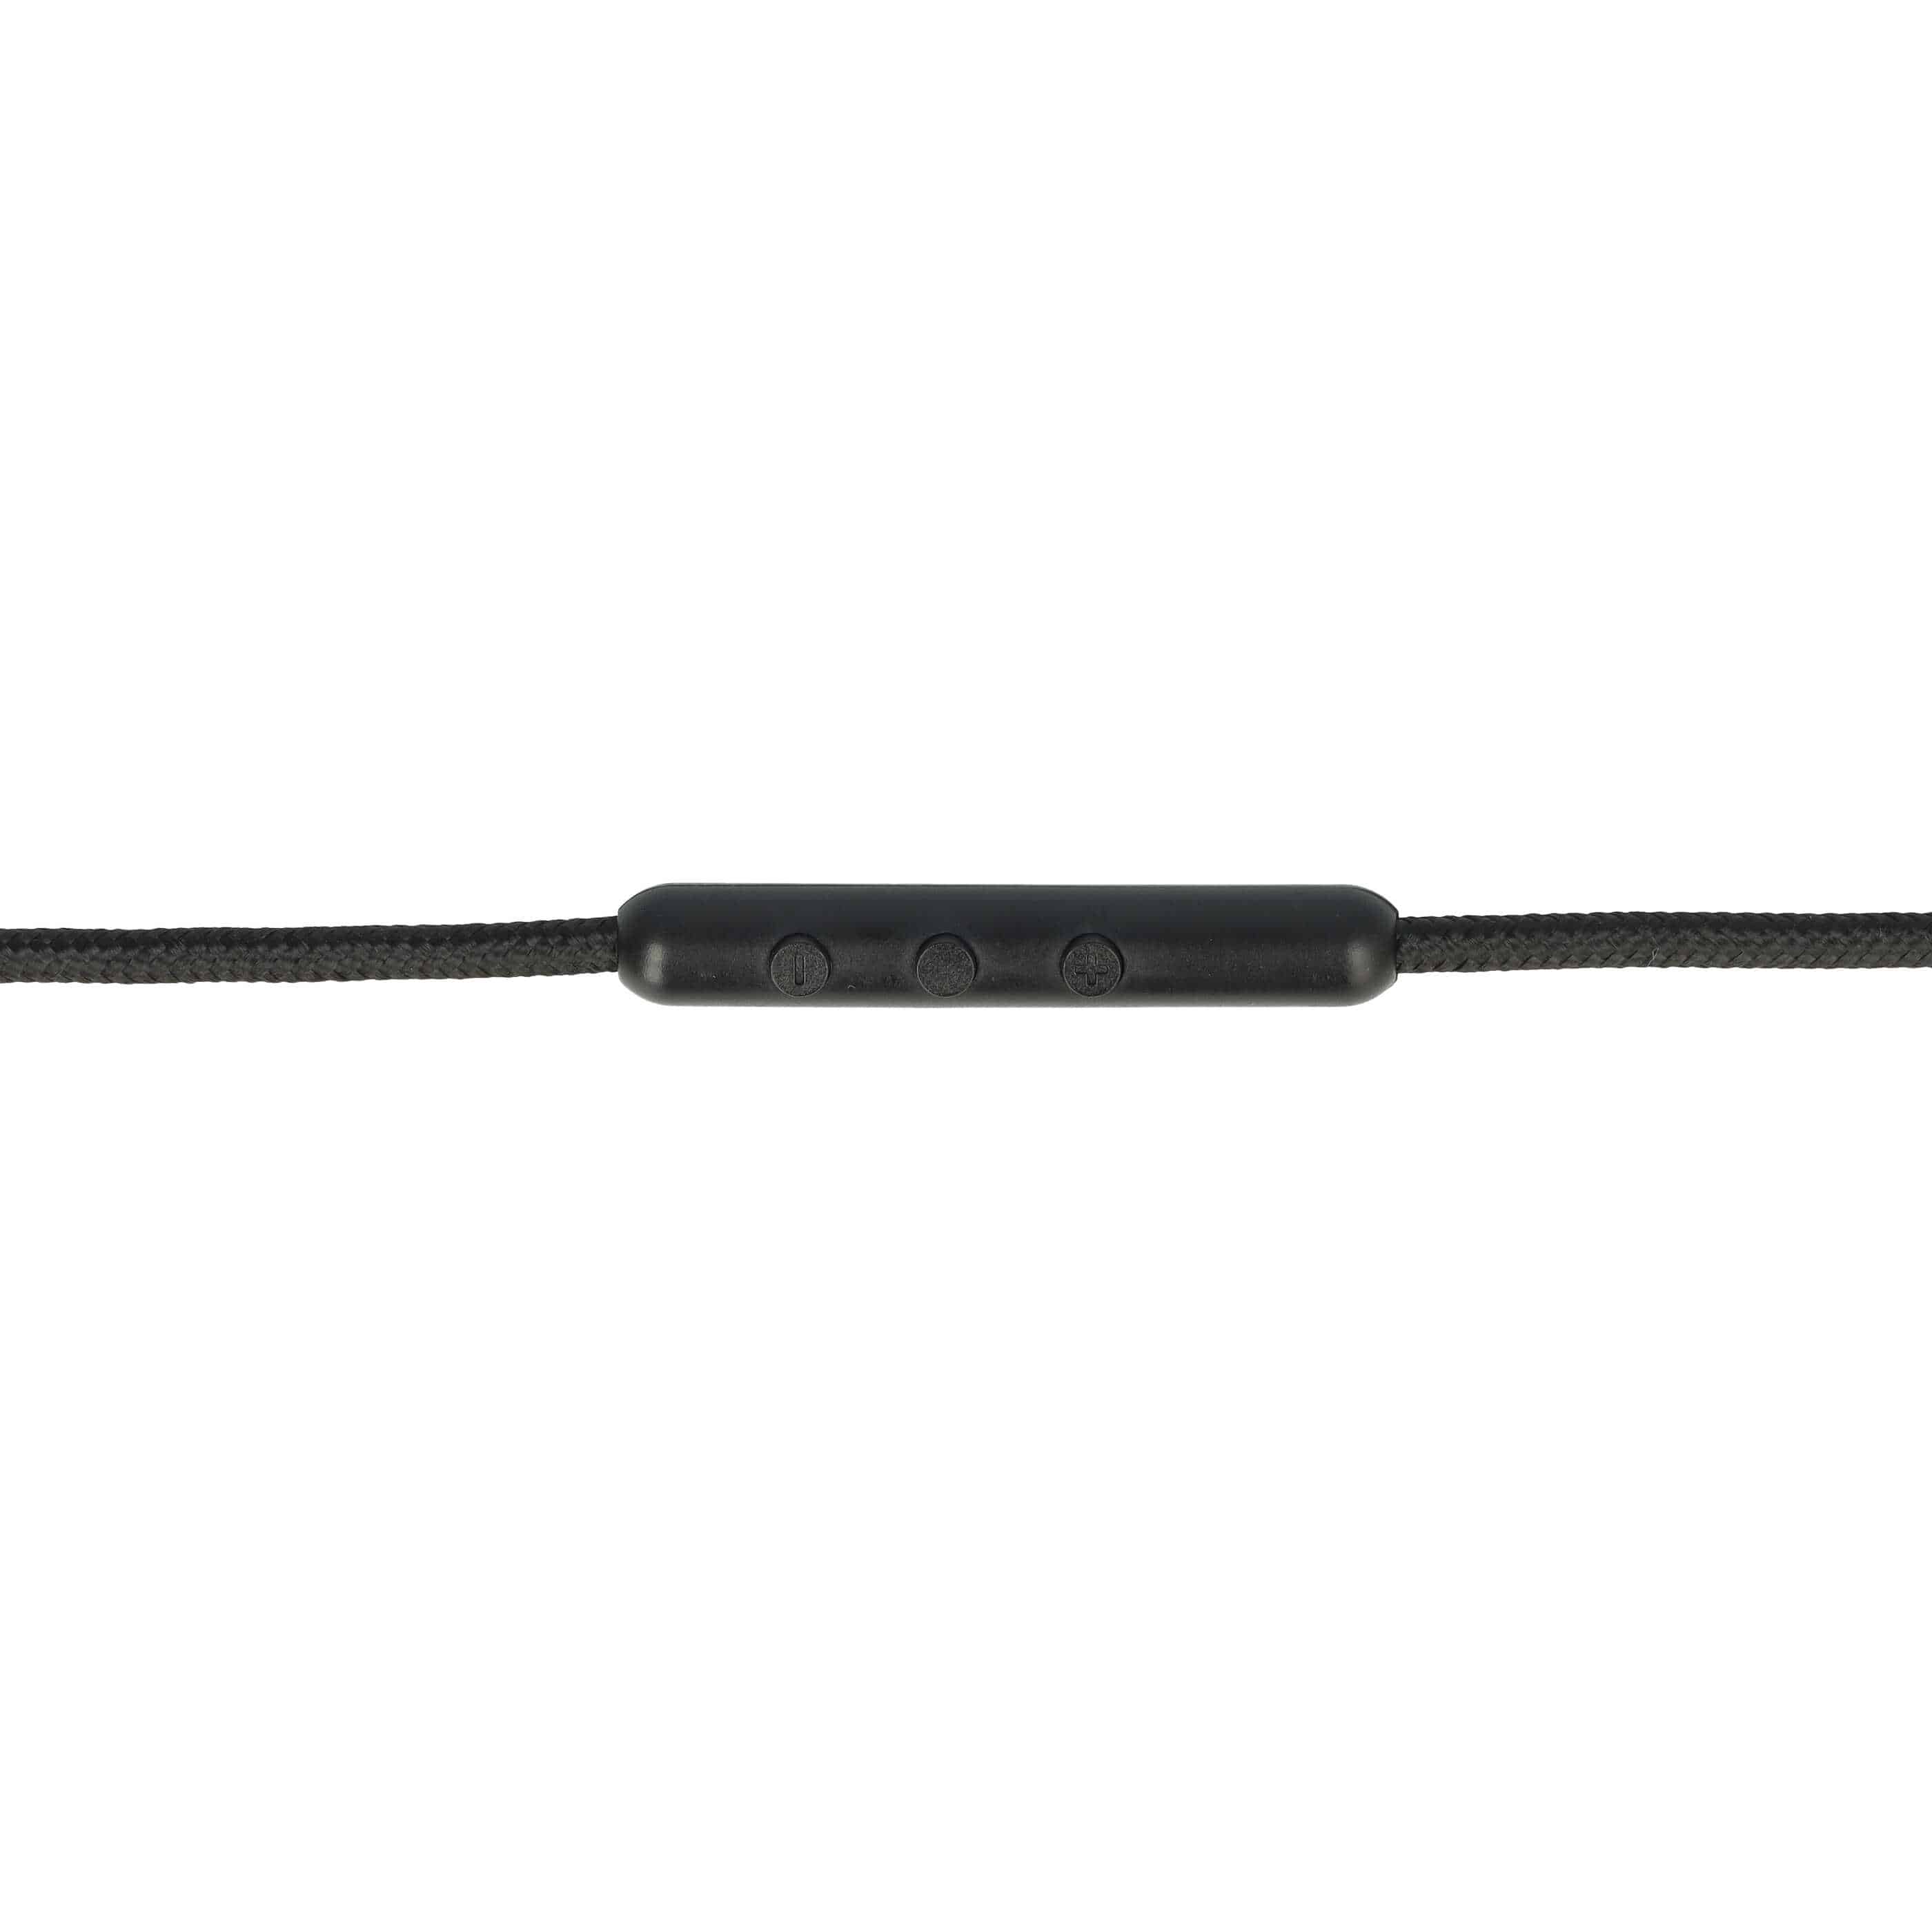 Kopfhörer Kabel passend für Sennheiser Momentum 2.0 HD4.30G , 140 cm, schwarz